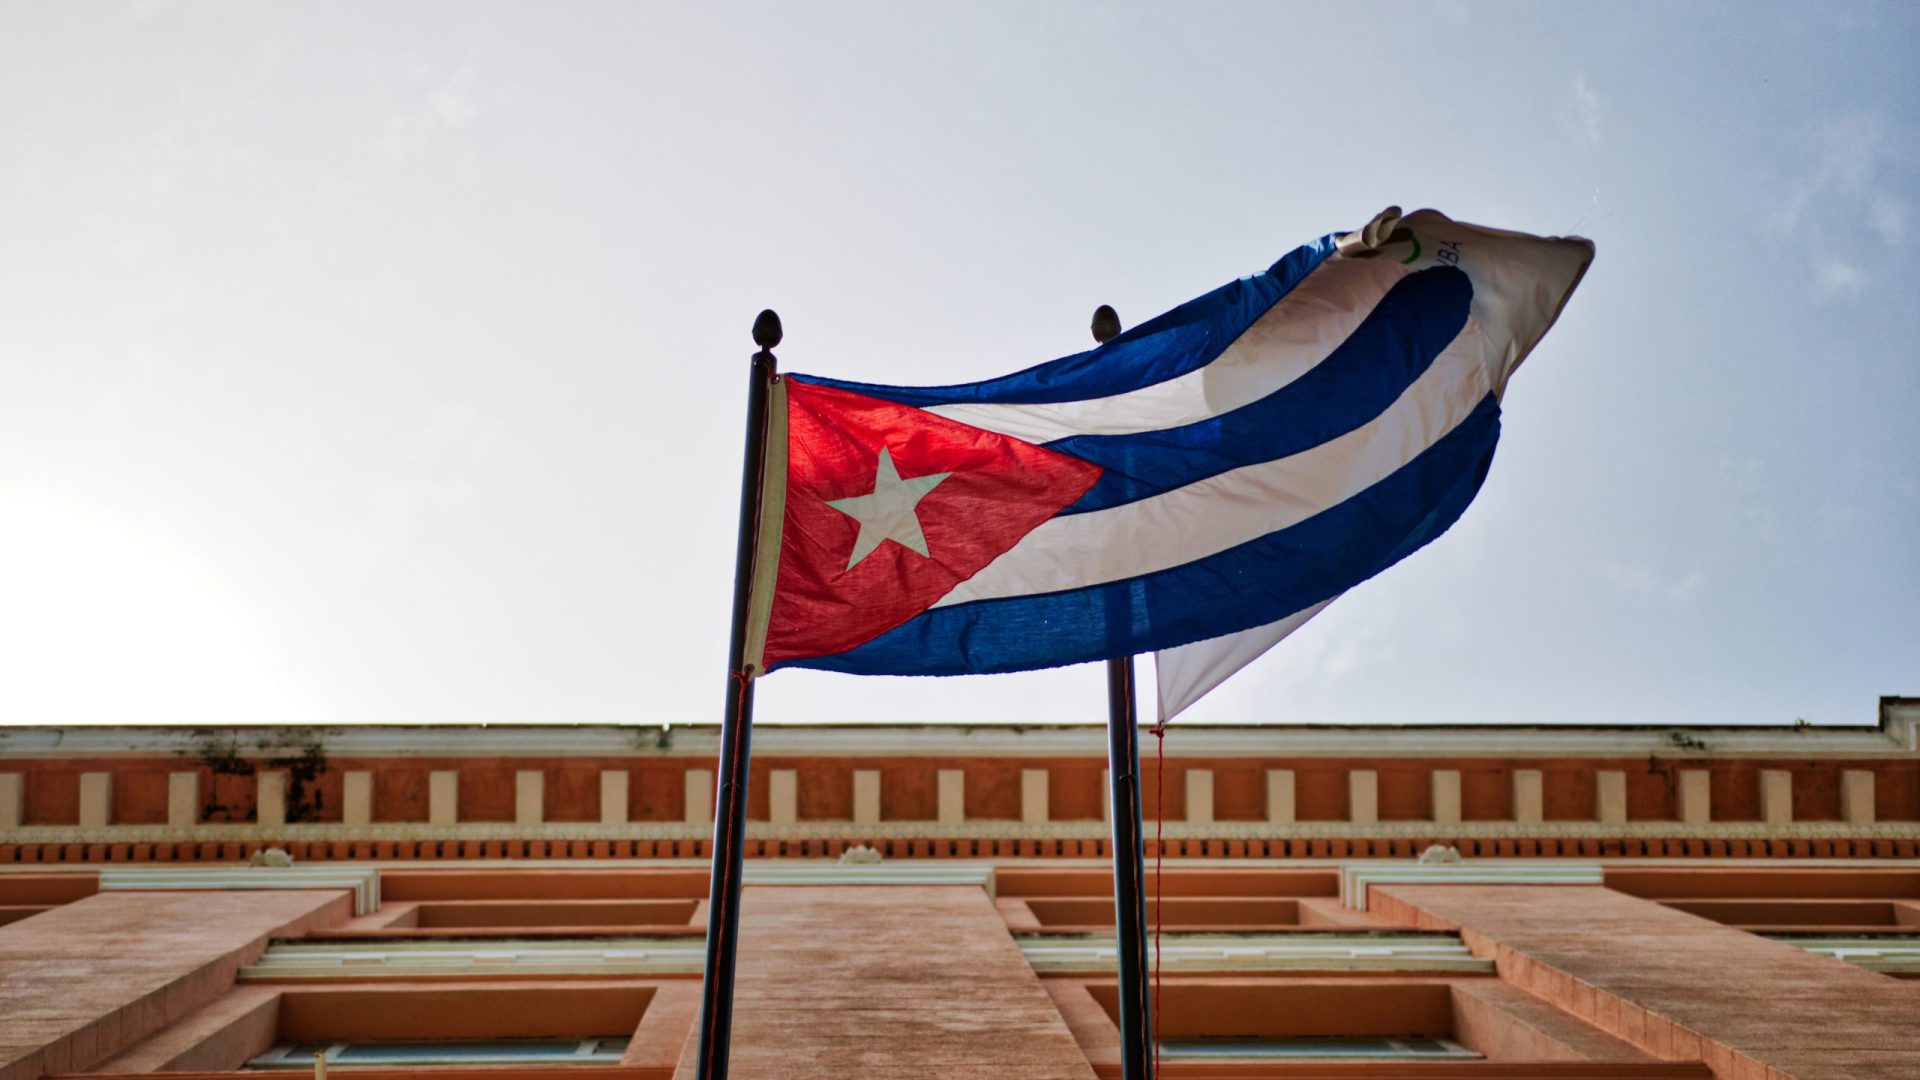 É o segundo ataque violento contra sede da embaixada Cubana nos EUA - Foto: Reprodução/Canva